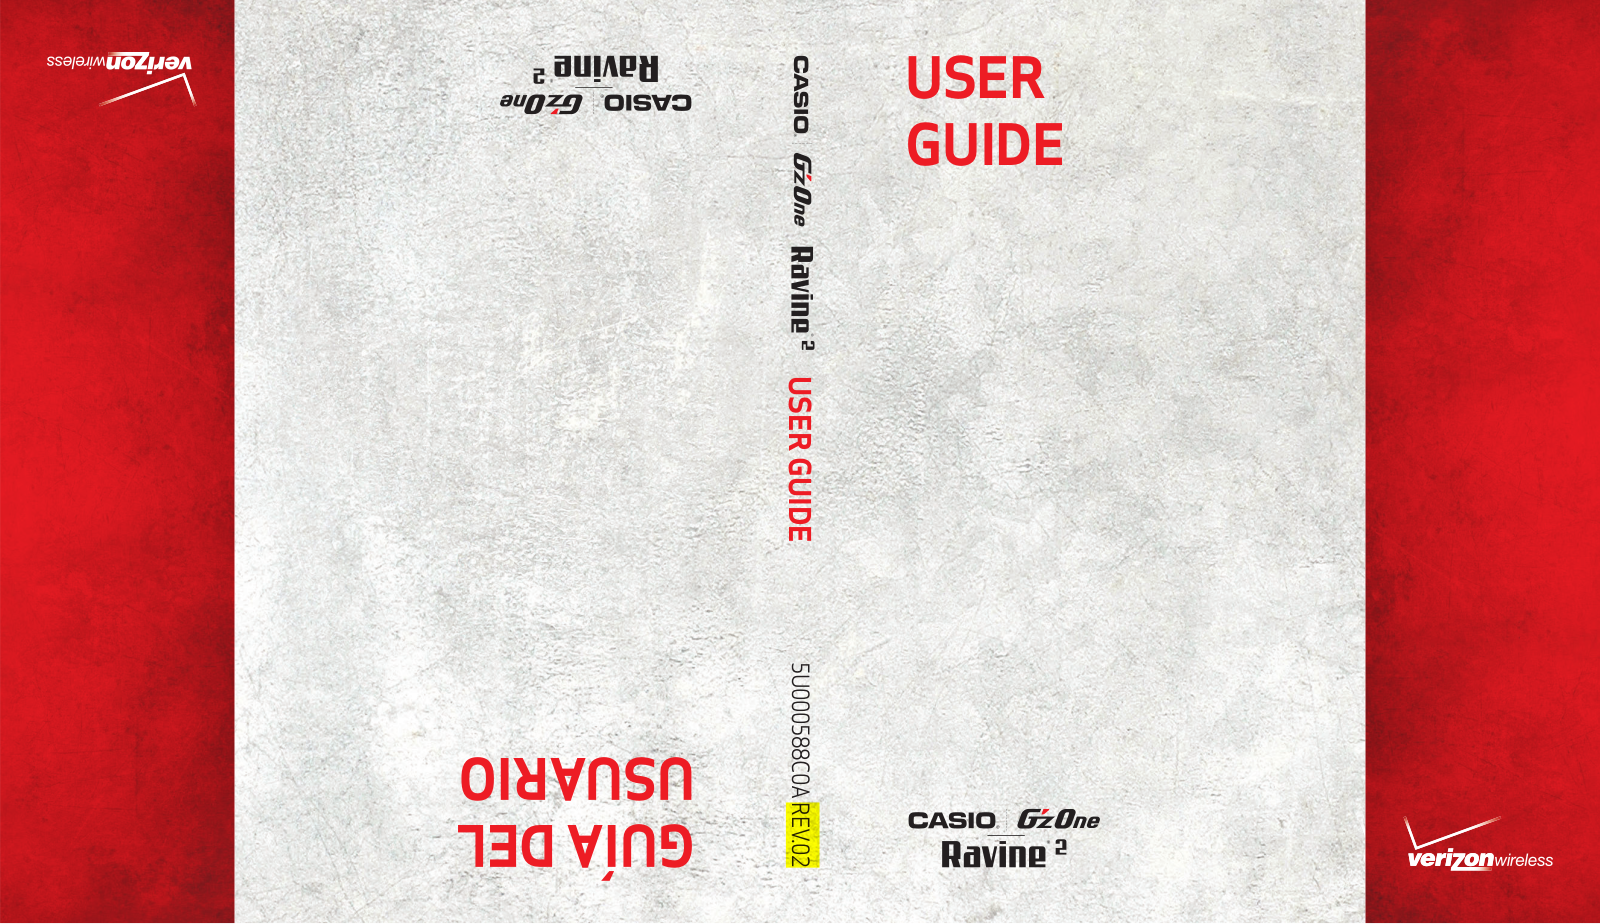 Casio GzOne Ravine 2 Owner's Manual